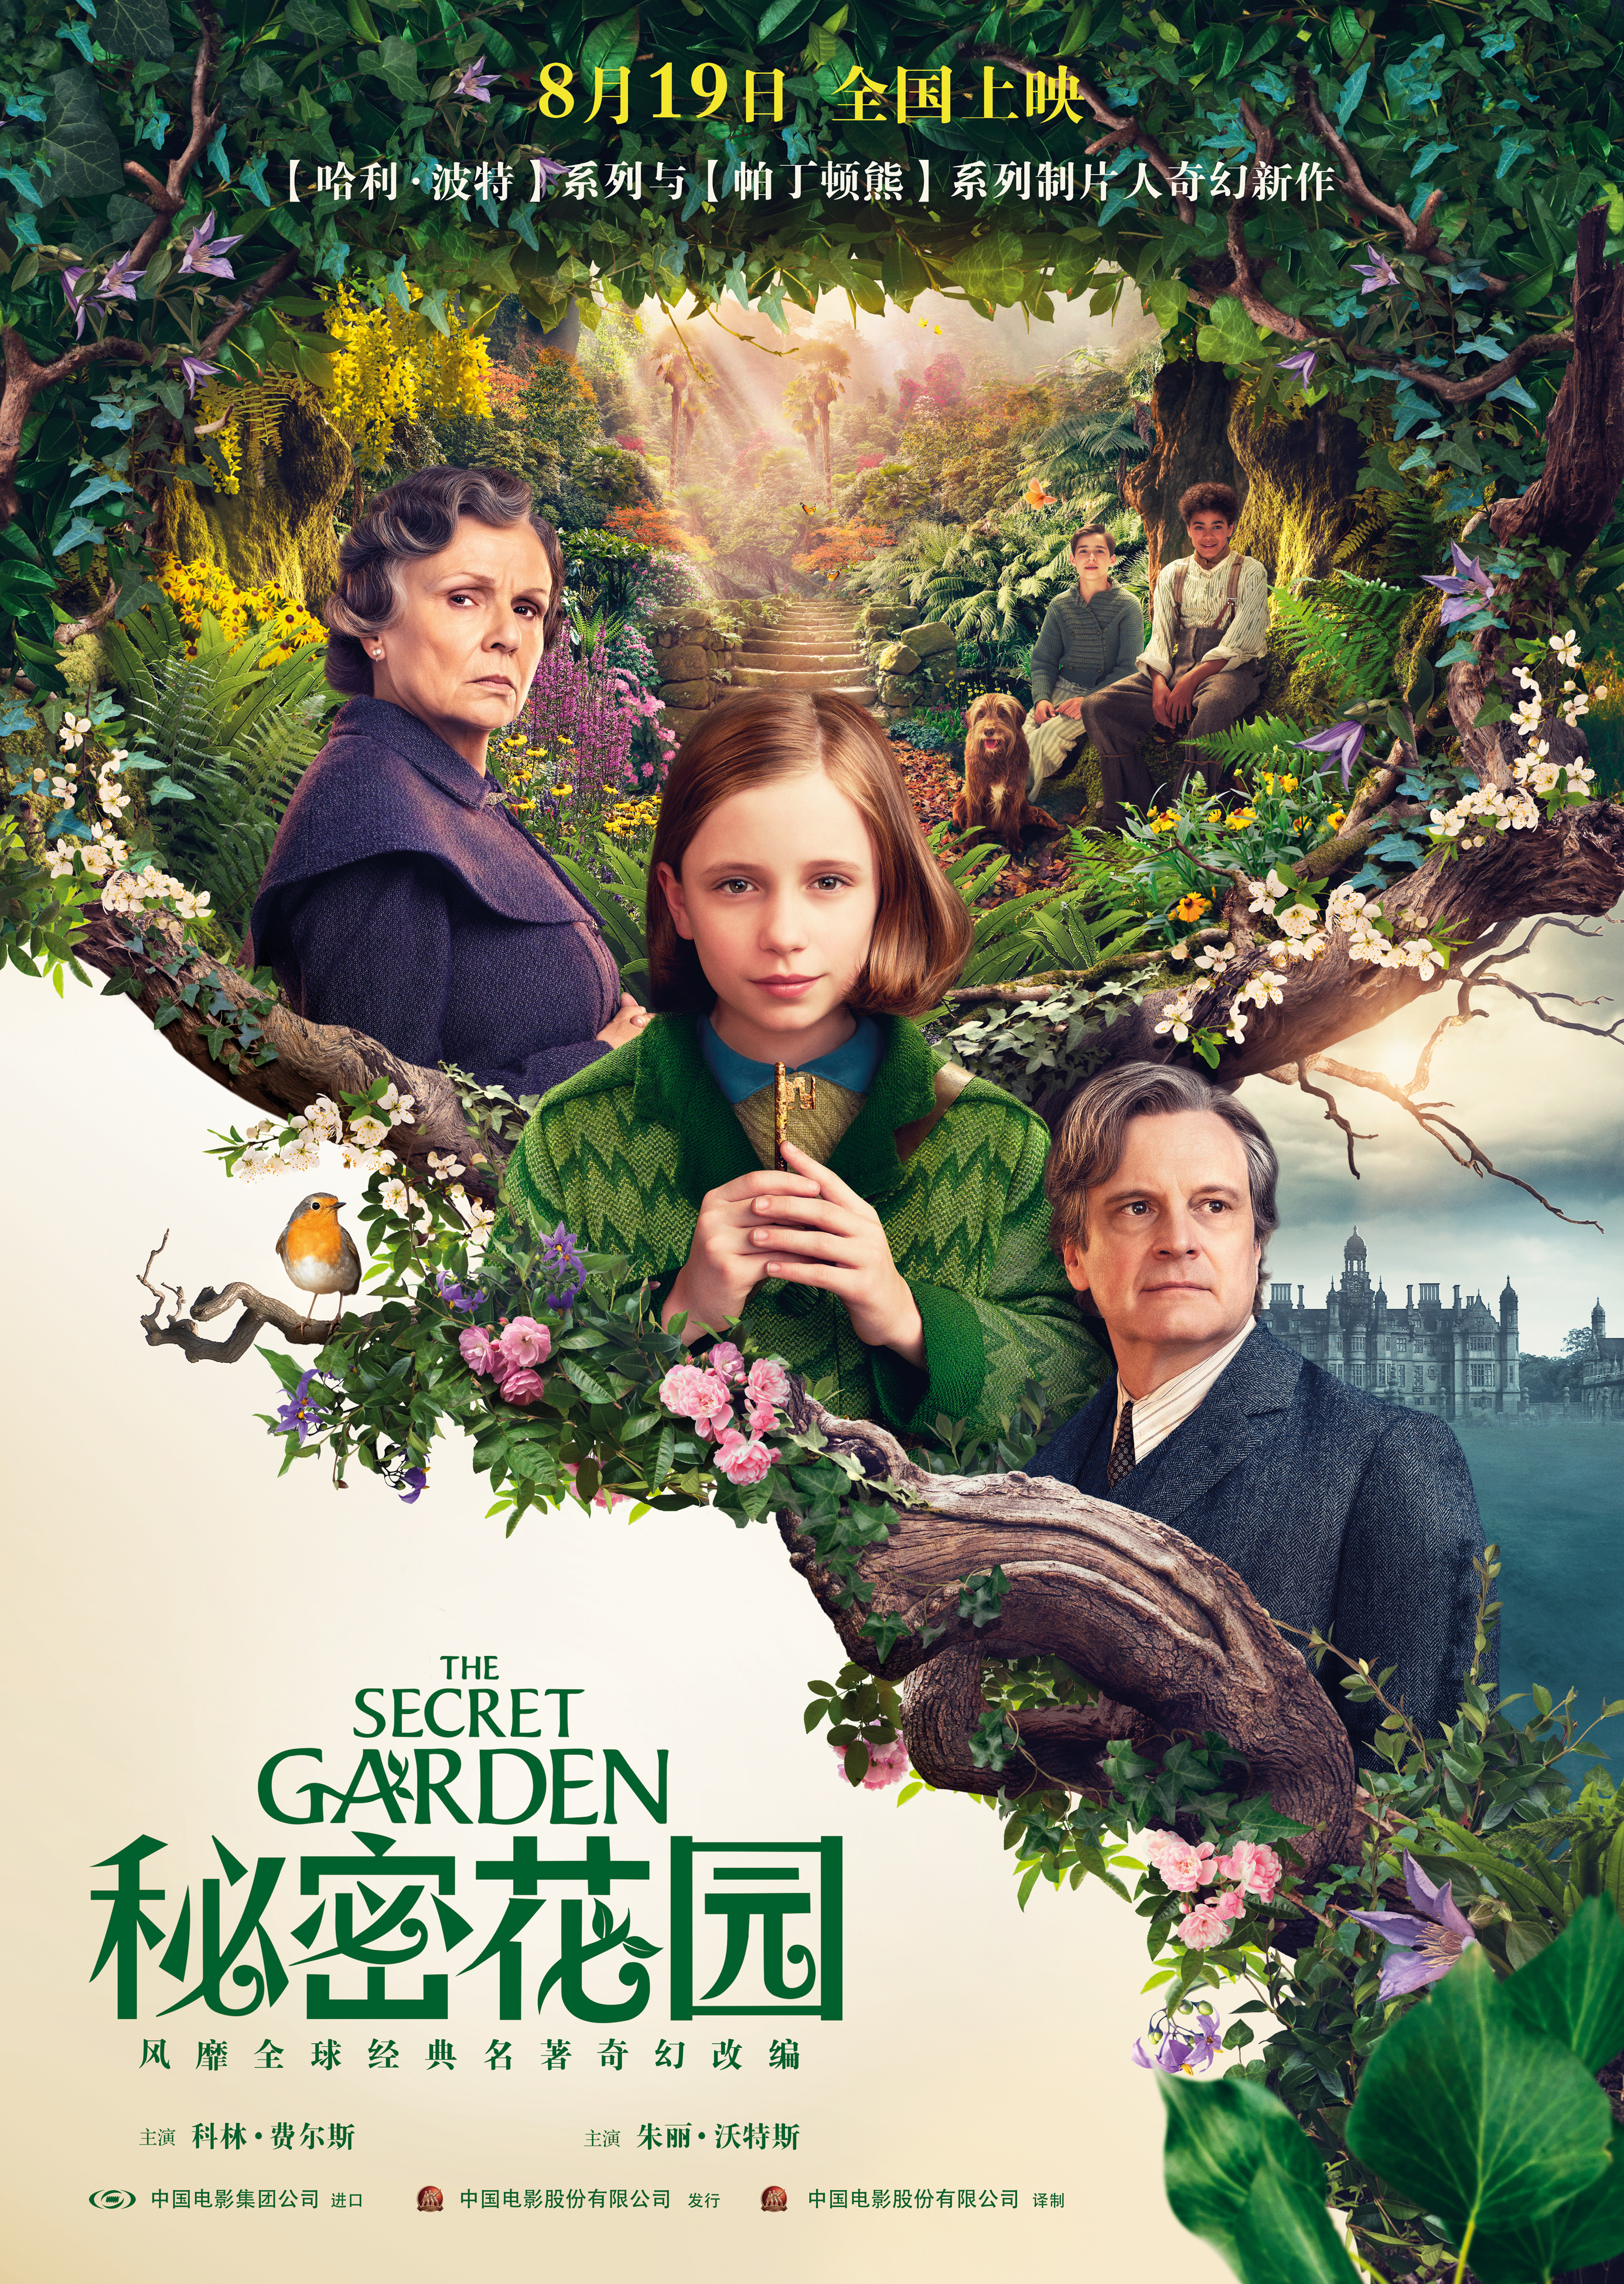 《秘密花园》8.19上映 女孩开启奇幻仙境花园冒险